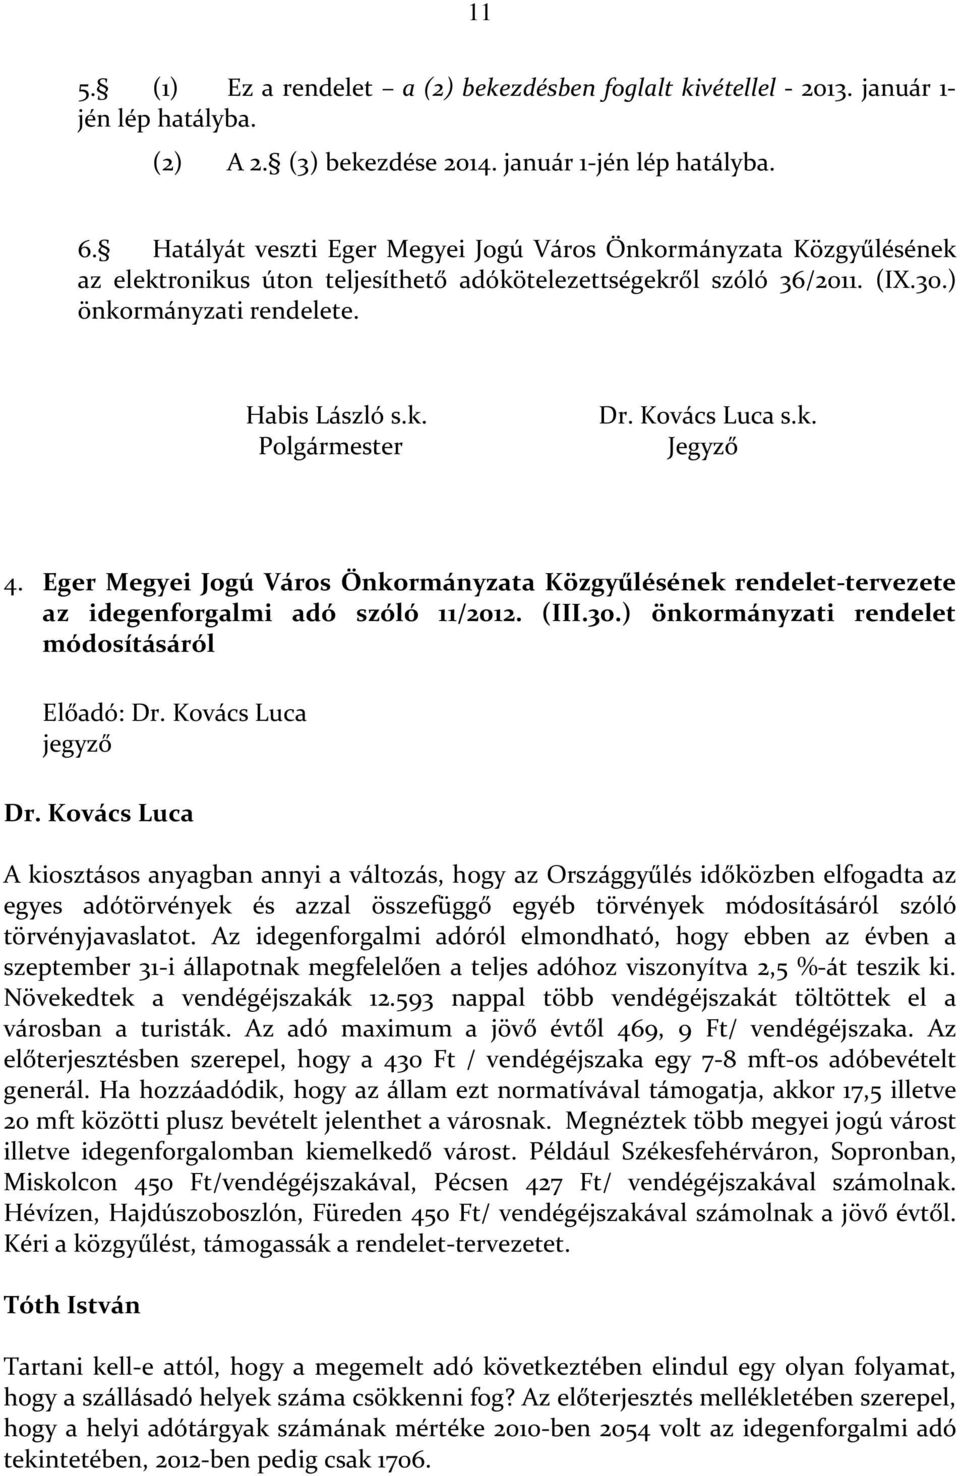 Kovács Luca s.k. Jegyző 4. Eger Megyei Jogú Város Önkormányzata Közgyűlésének rendelet-tervezete az idegenforgalmi adó szóló 11/2012. (III.30.) önkormányzati rendelet módosításáról Előadó: Dr.